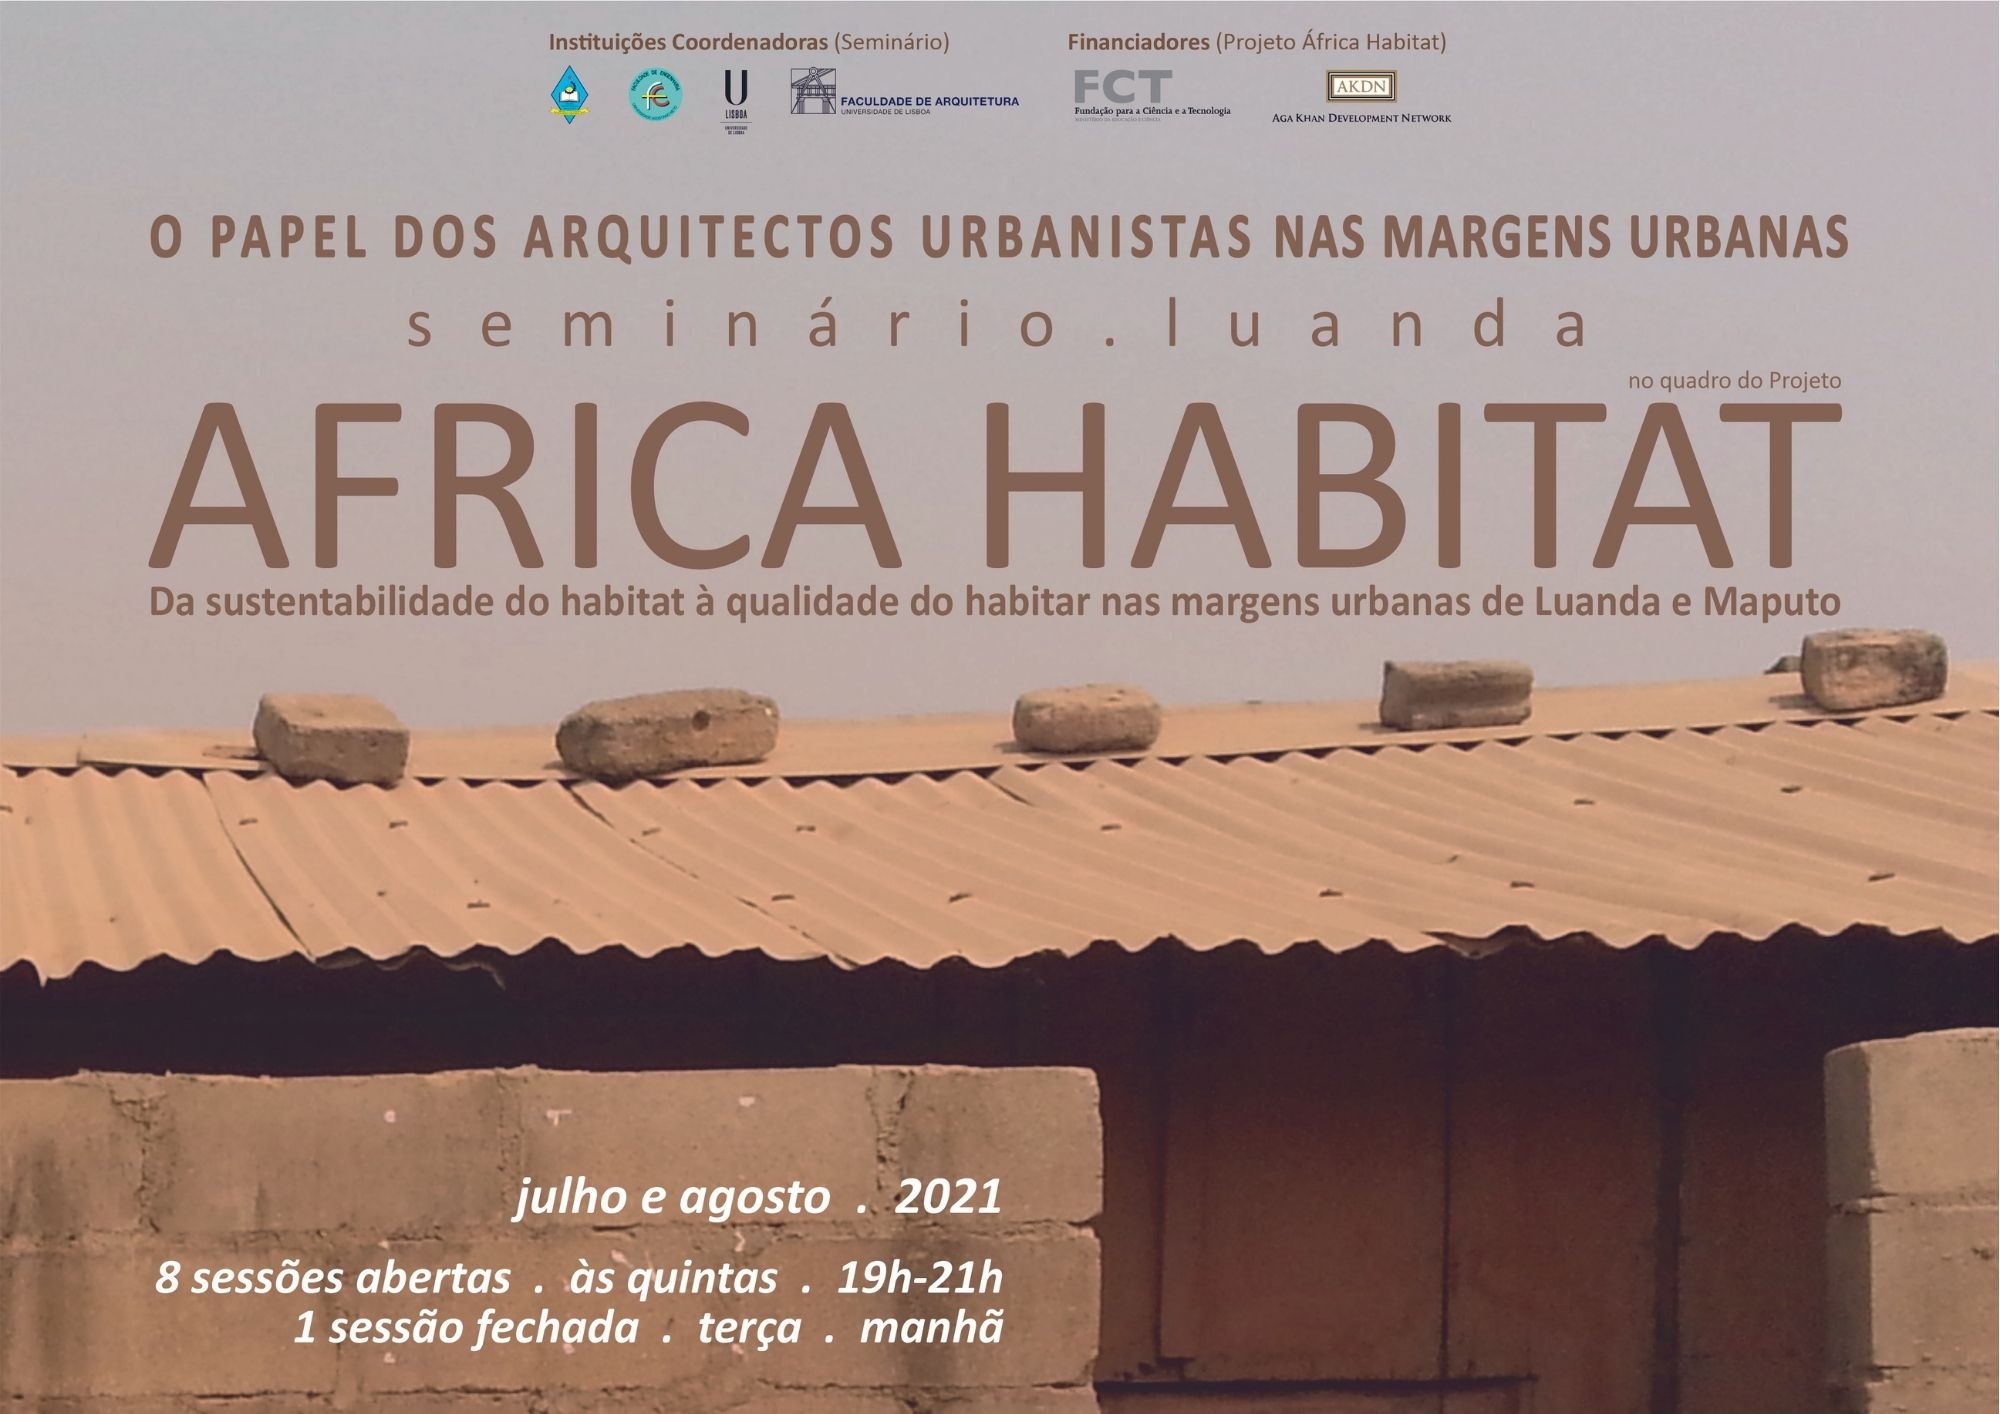 seminário “O papel dos arquitetos urbanistas nas margens urbanas”, no dia 22 de julho (quinta-feira), das 19h às 21h (Luanda/Lisboa)